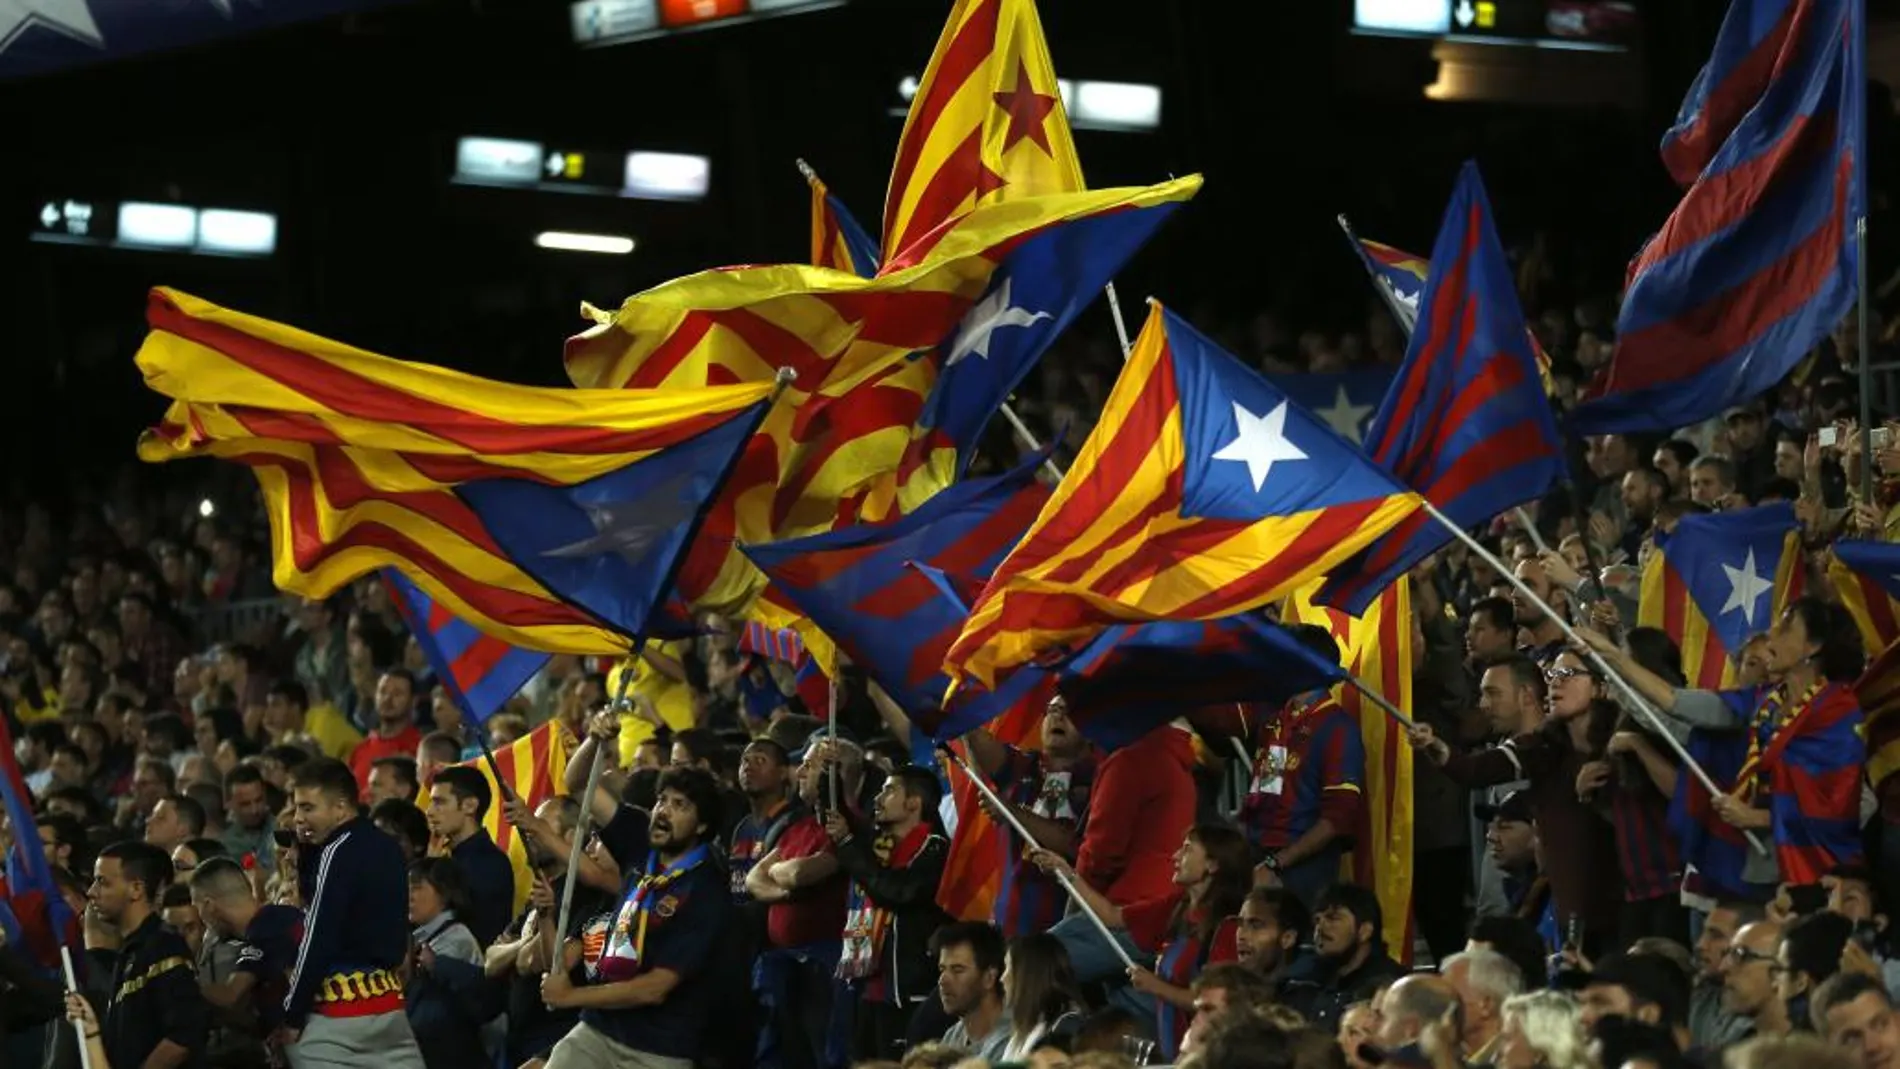 Numerosas esteladas (banderas independentistas) ondeaban en todos los sectores del Camp Nou